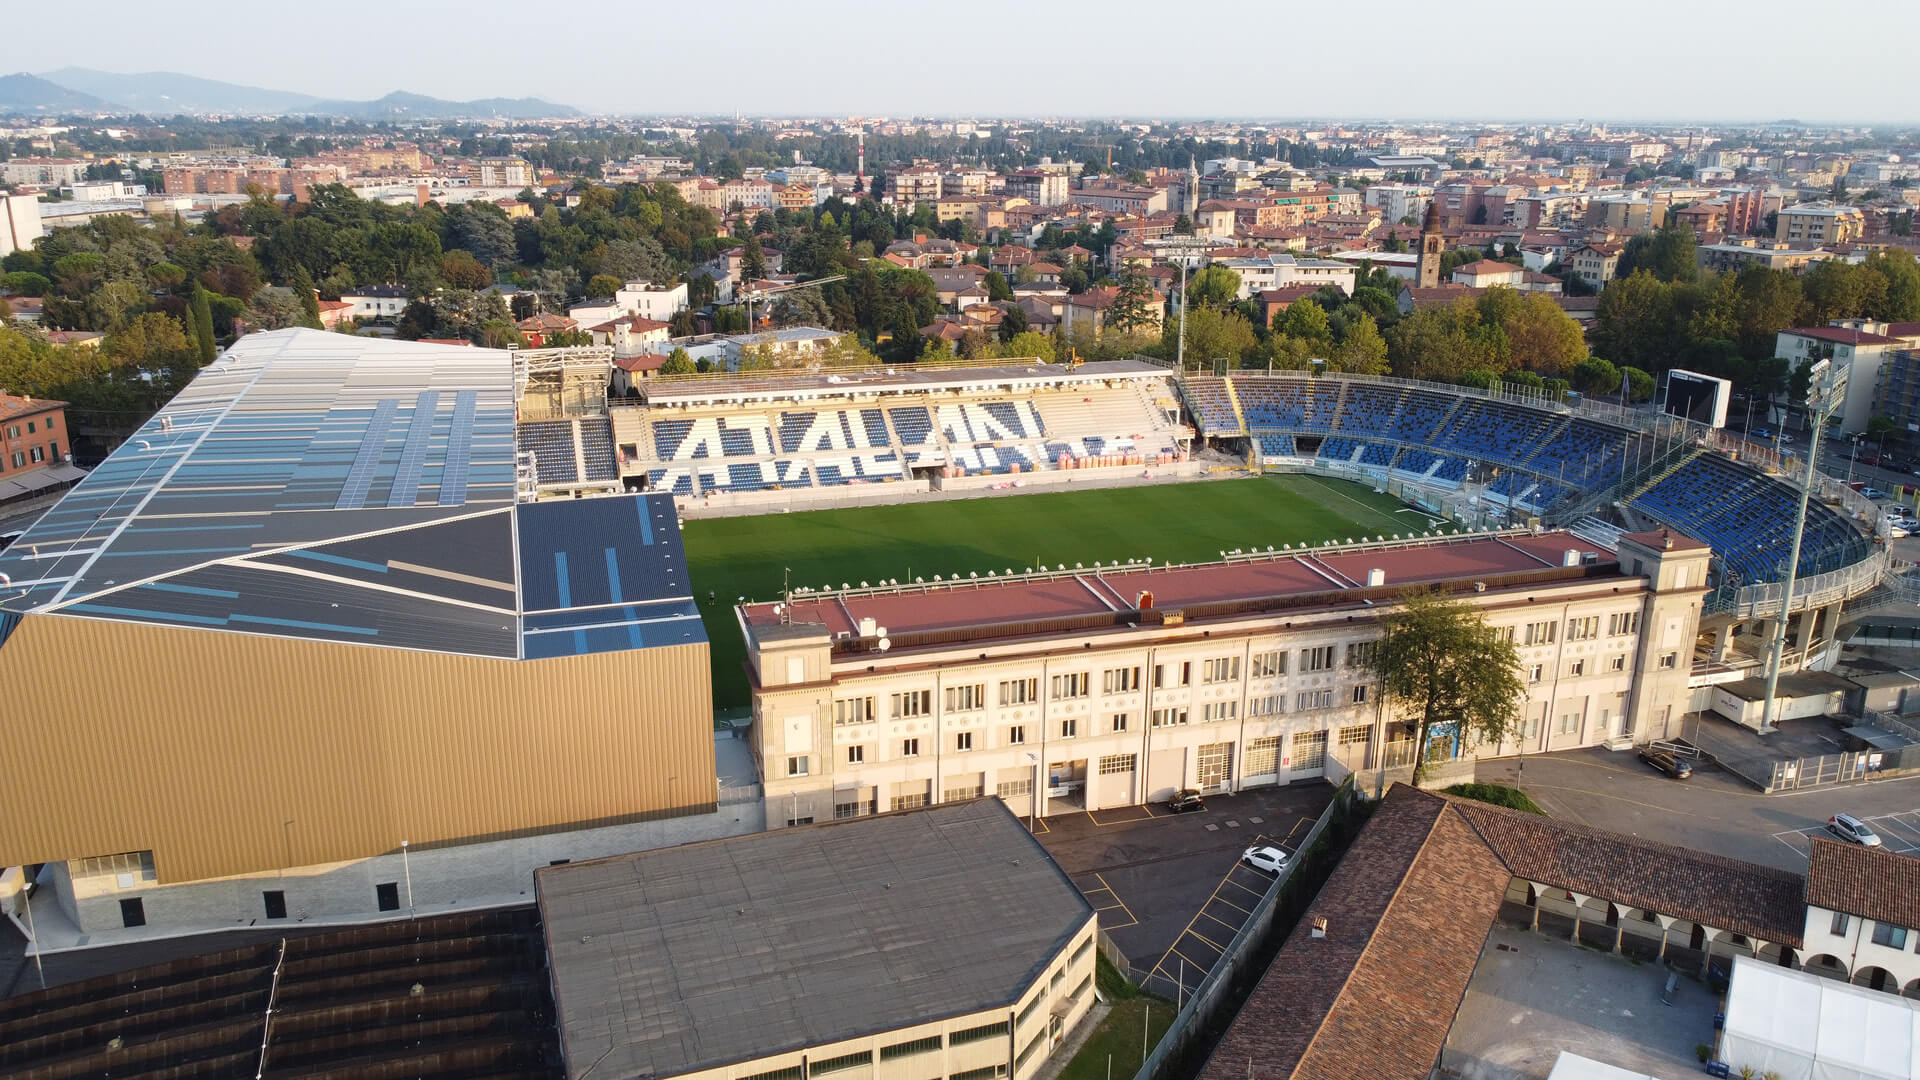 Stadio Atleti Azzurri d'Italia / Gewiss Stadium in Bergamo